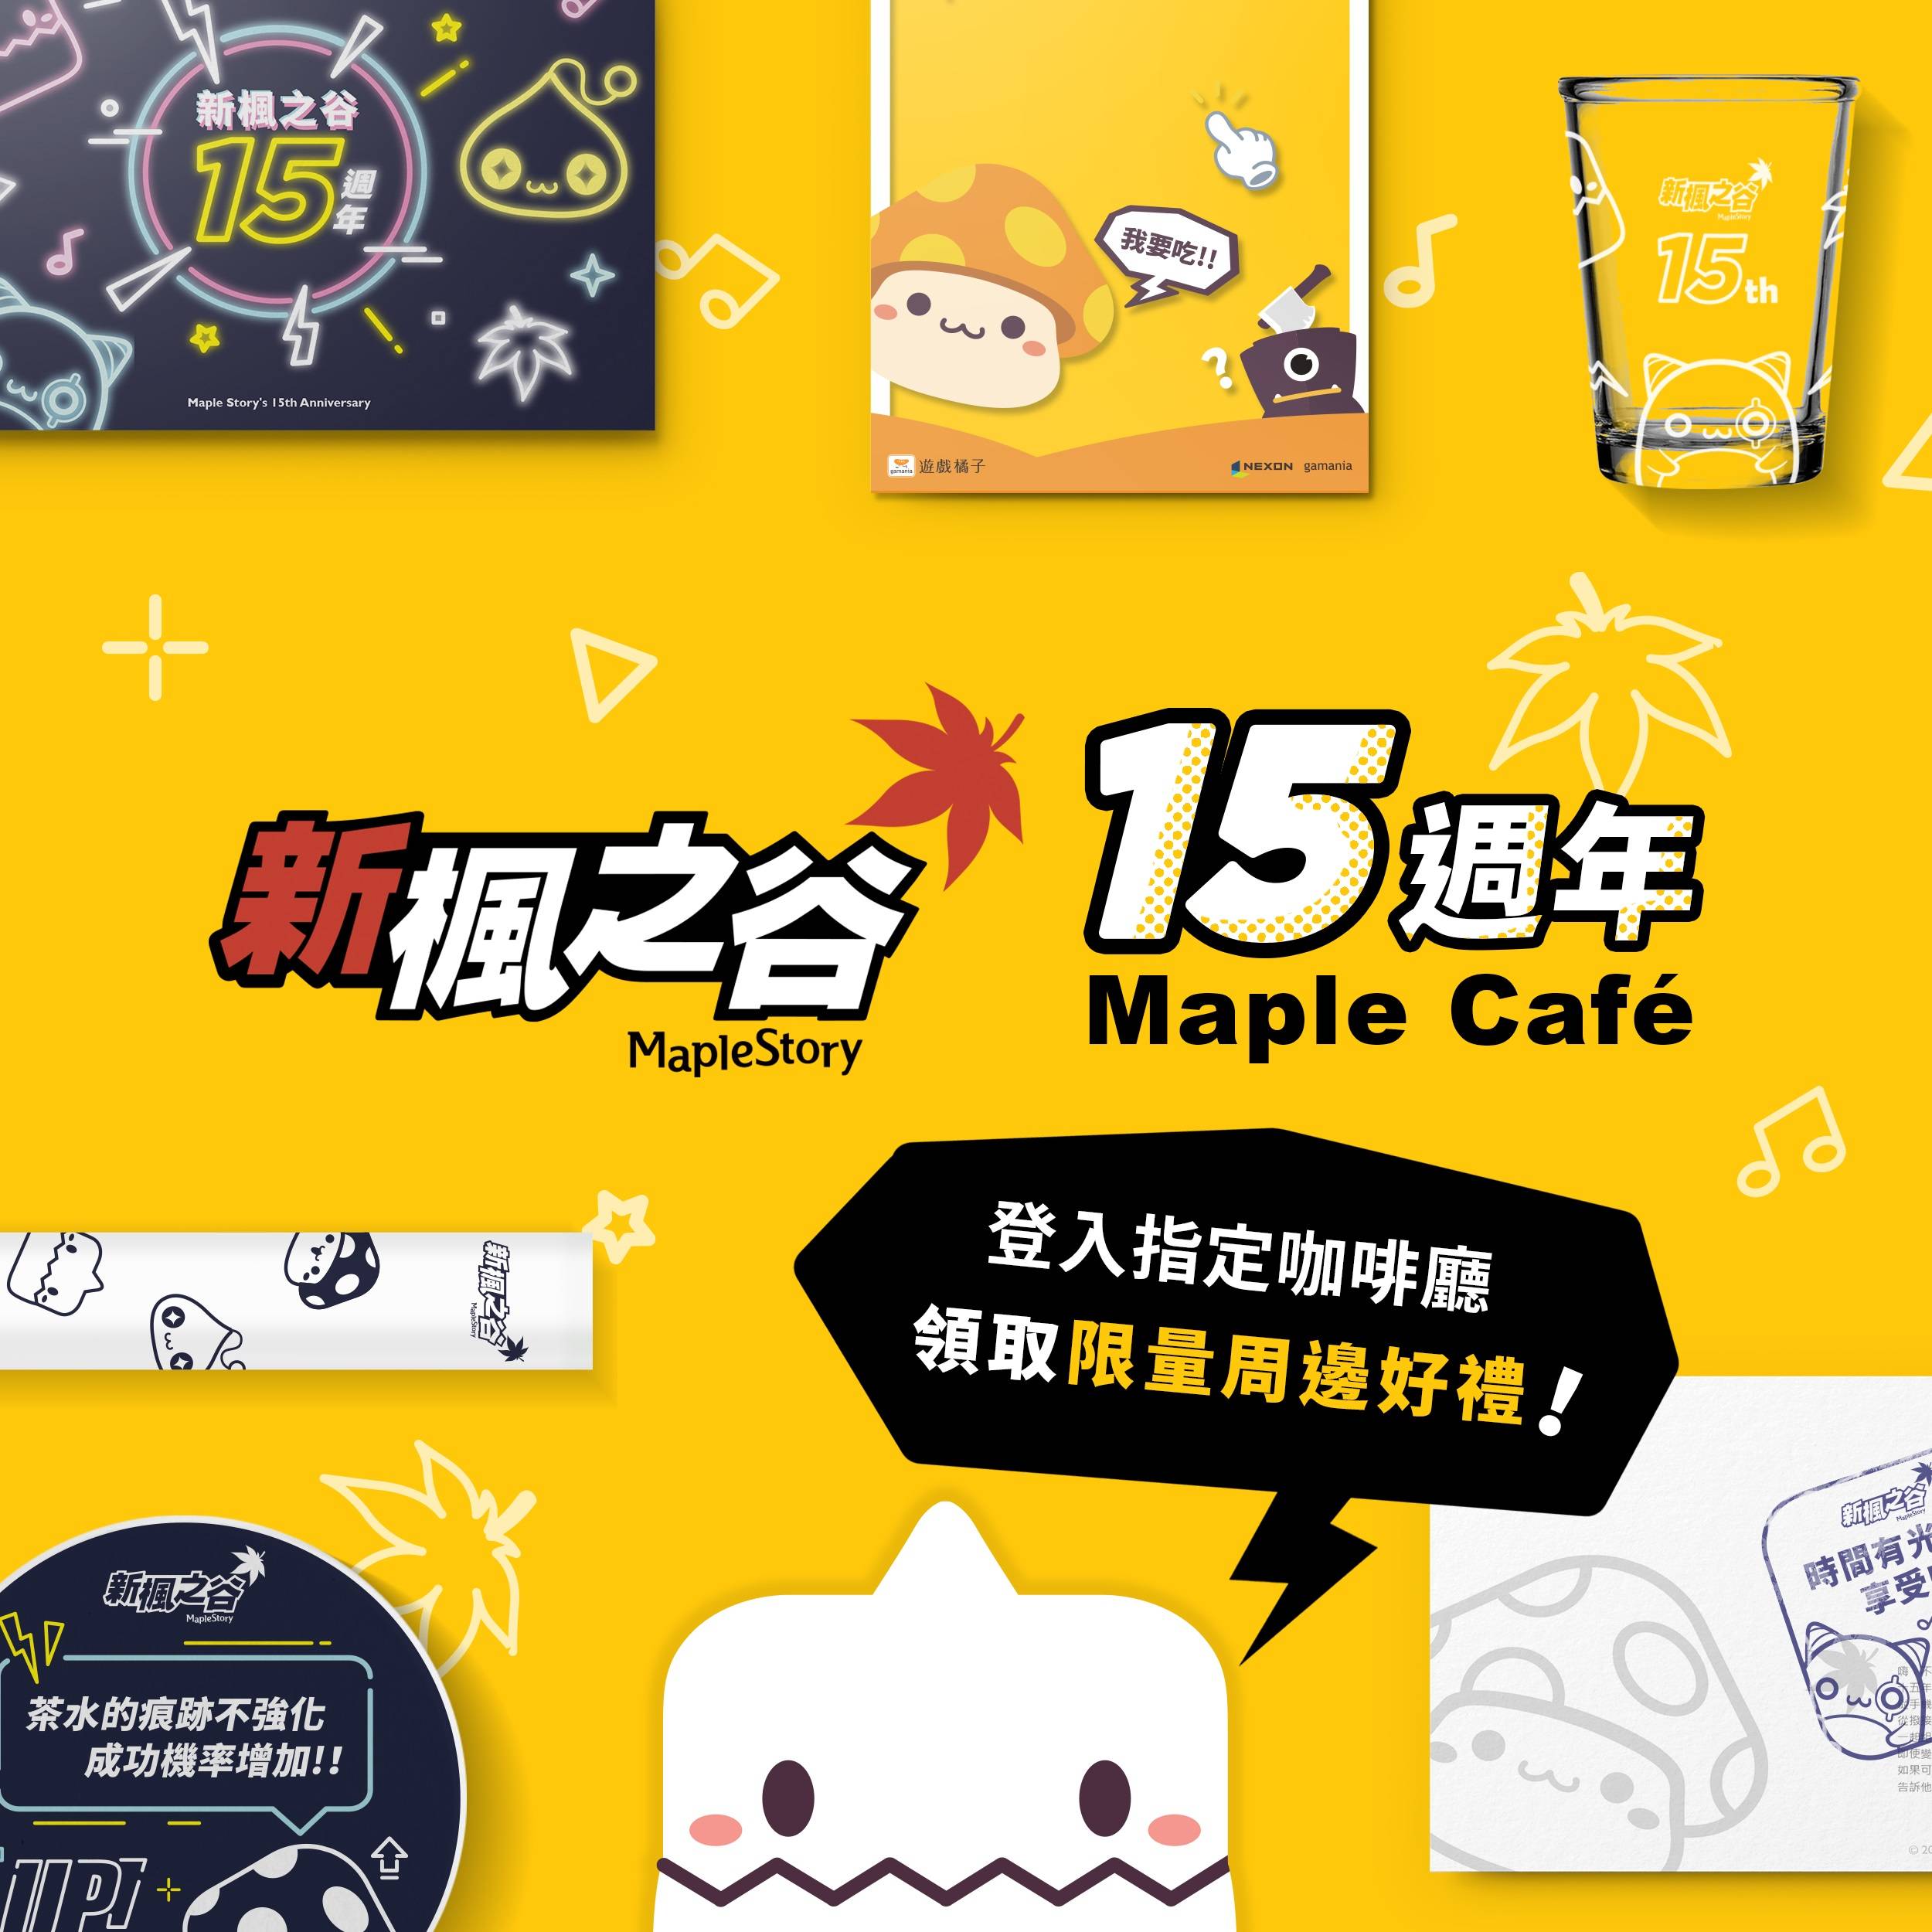 《新楓之谷》全新海外系統「楓之谷探險隊」登場 展開新冒險玩法，15週年限定Maple Café、8月14日北中南同步開幕！